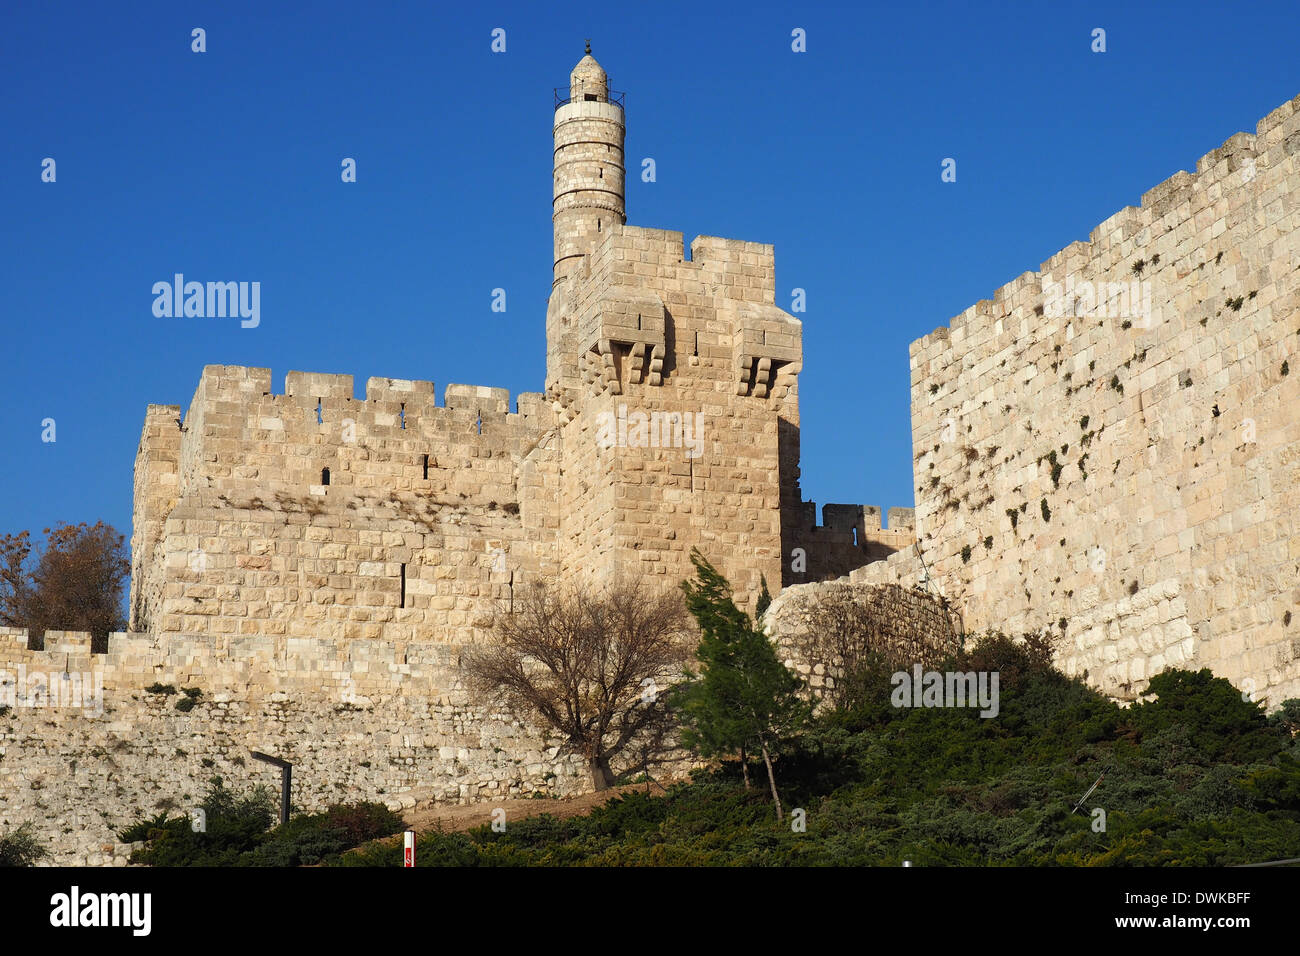 La citadelle de la Tour de David, vu de l'extérieur des murs de la vieille ville de Jérusalem Banque D'Images